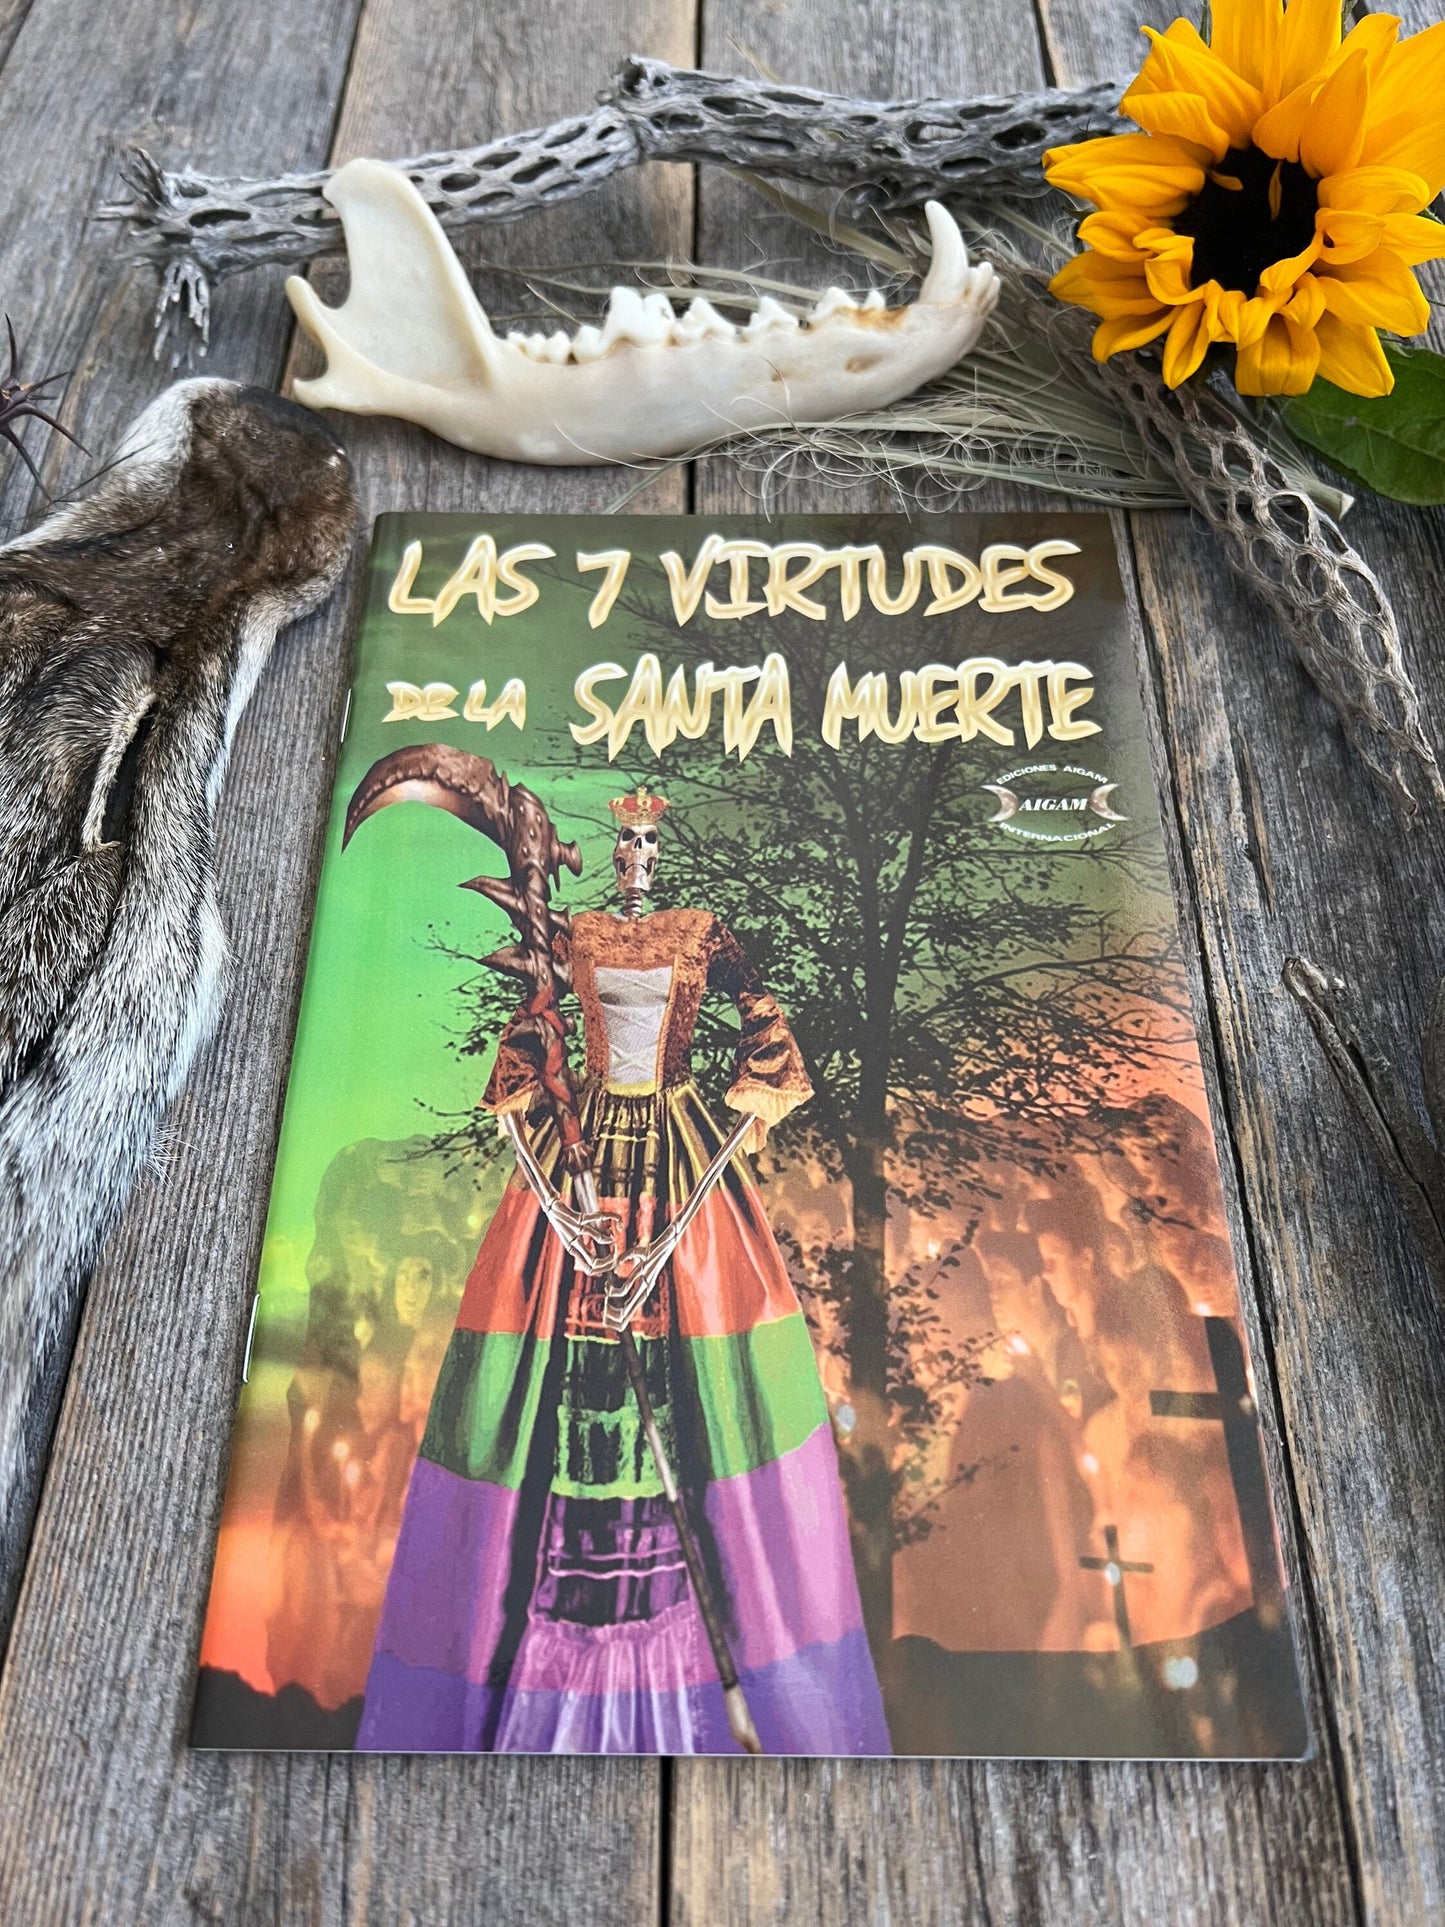 Las 7 Virtudes De La Santa Muerte Amorosa y Protectora + New Book From Mexico